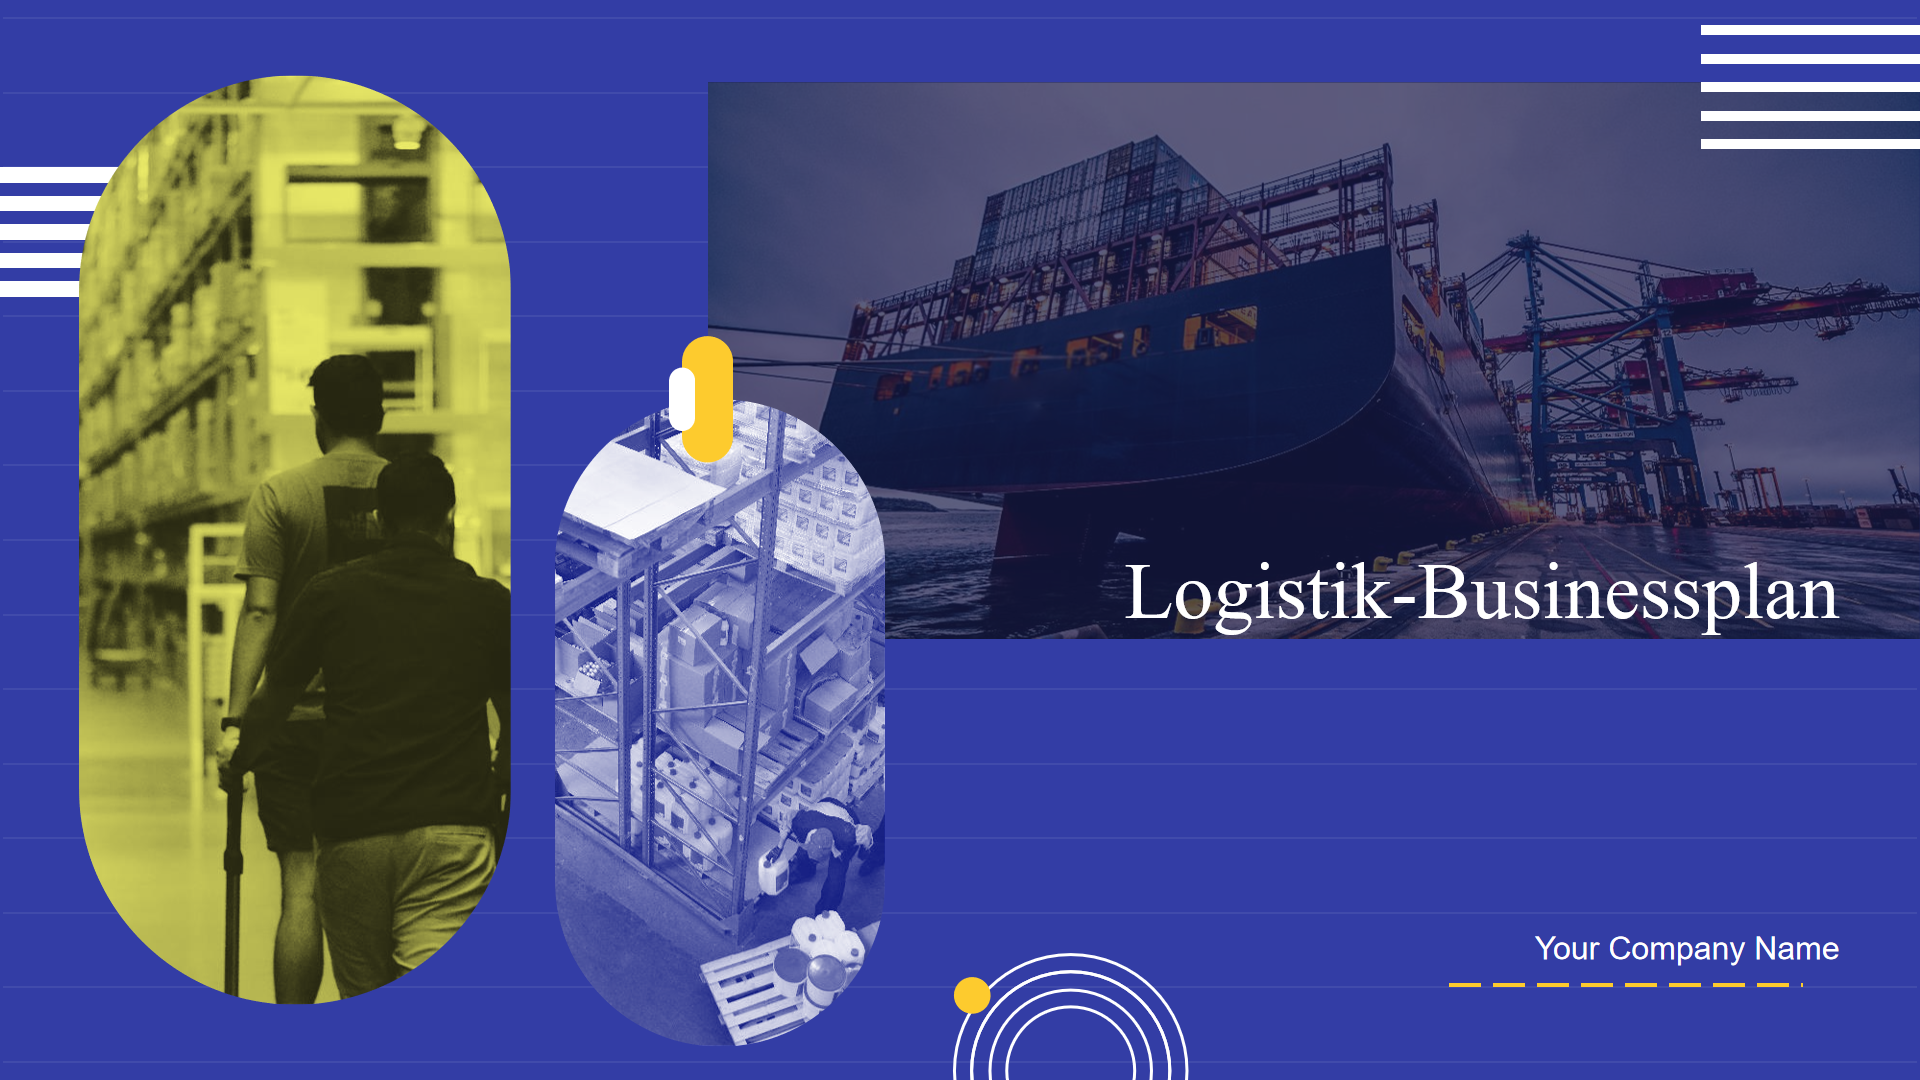 Logistik-Businessplan